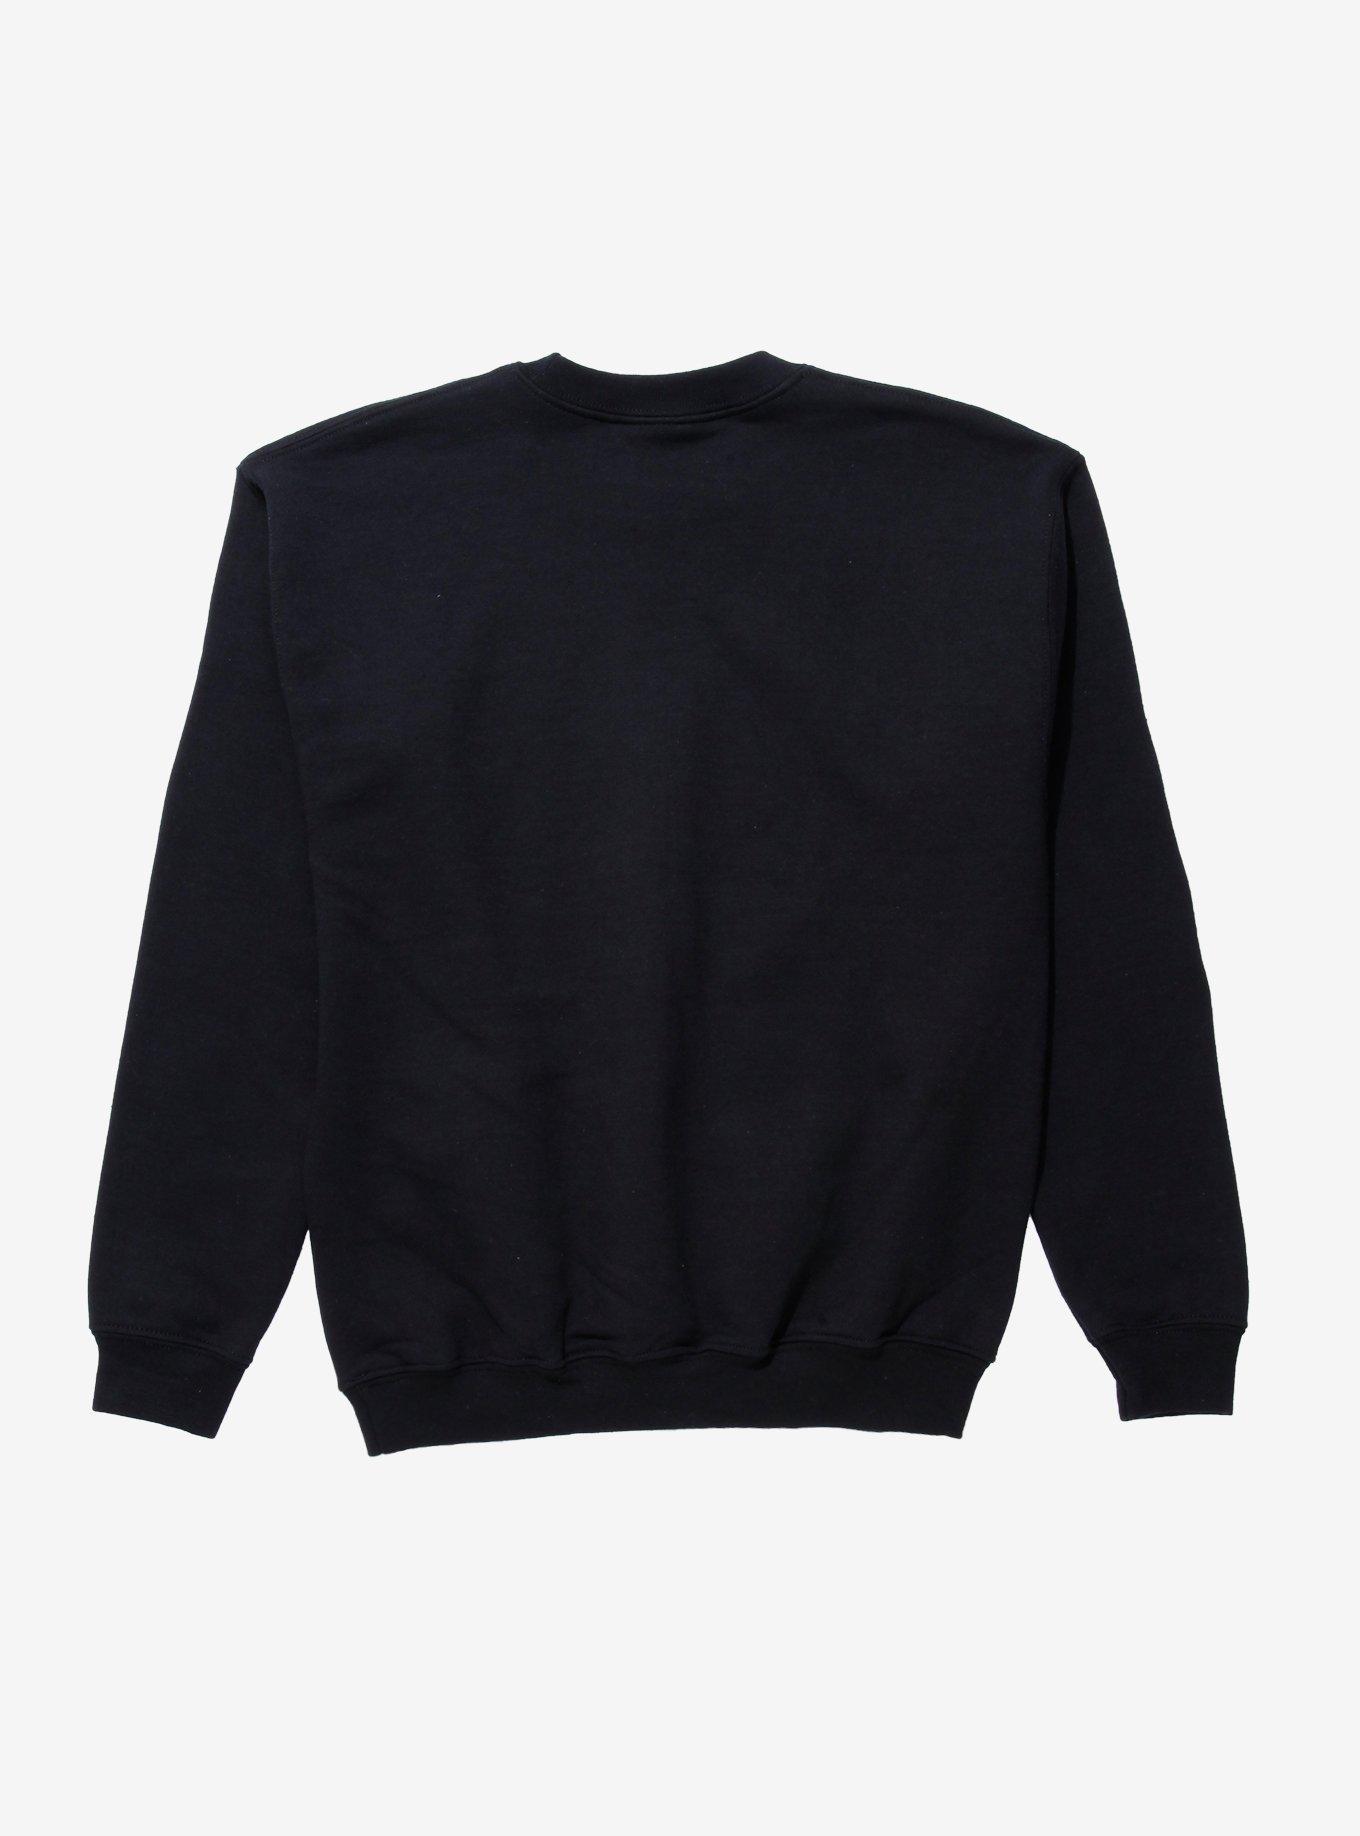 Tupac California Love Girls Sweatshirt, BLACK, alternate